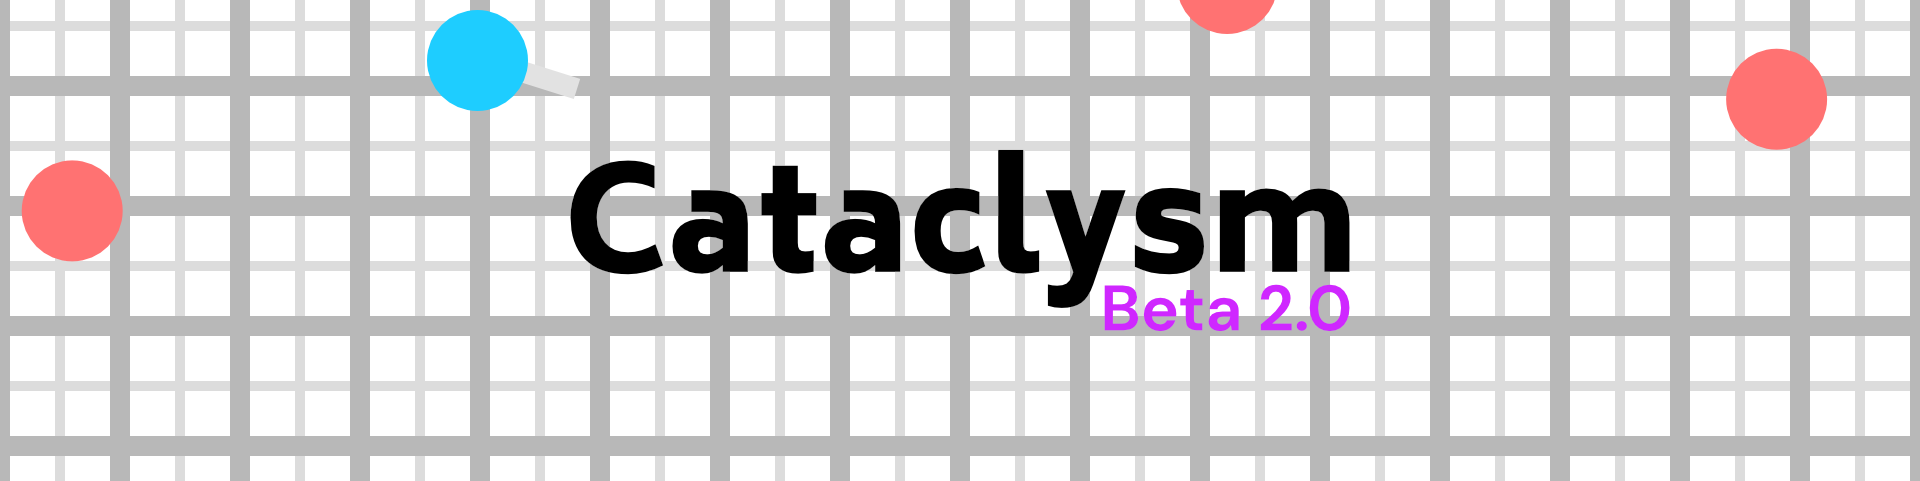 Cataclysm 2.0